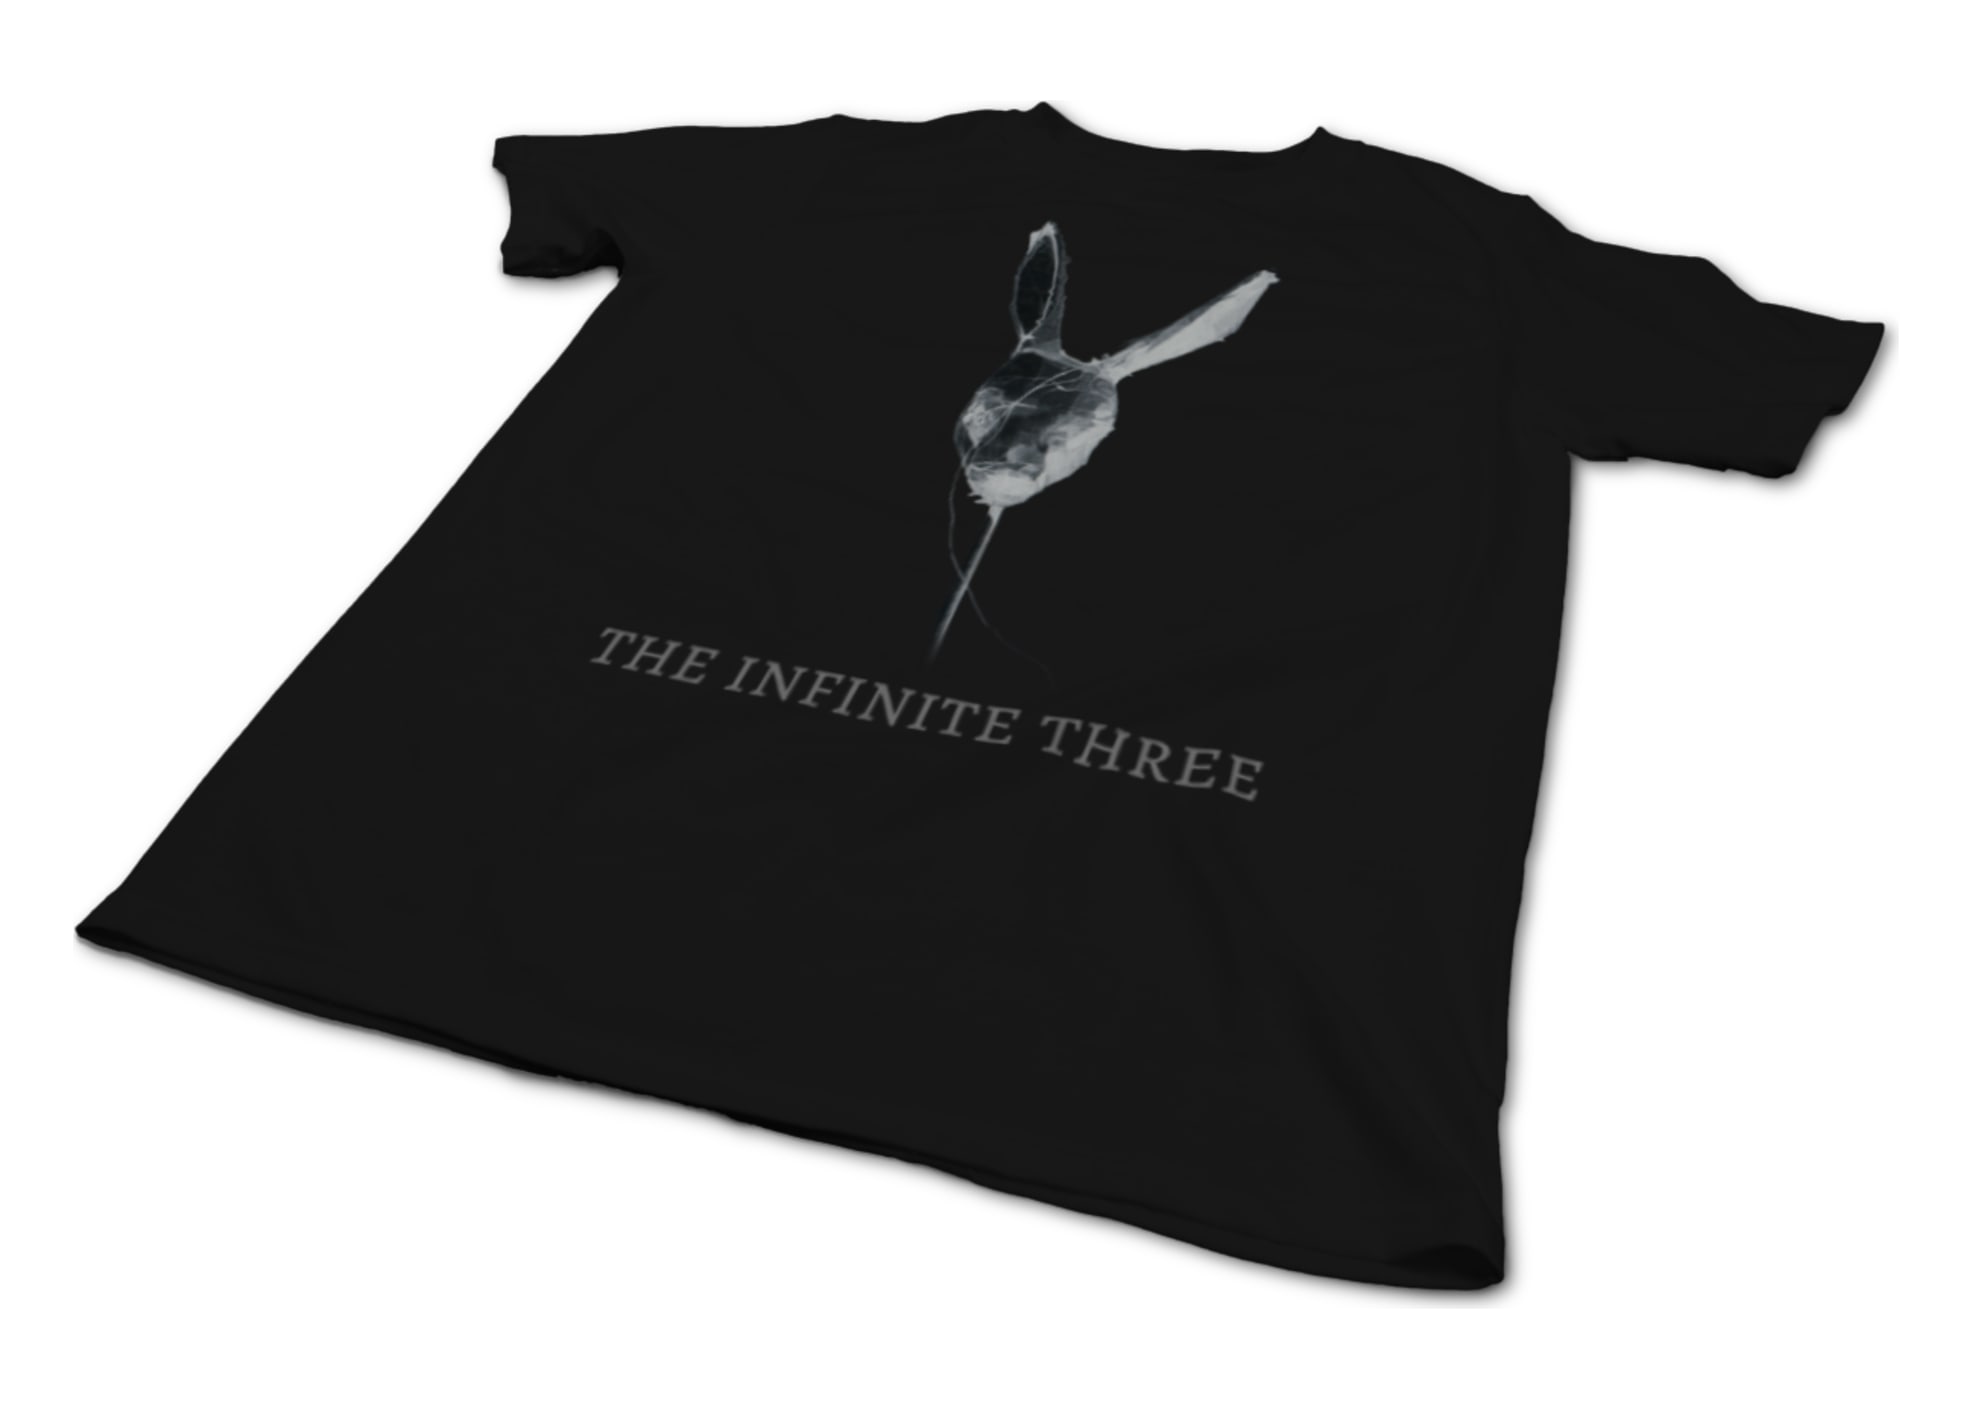 The infinite three lucky beast shirt 1494285992